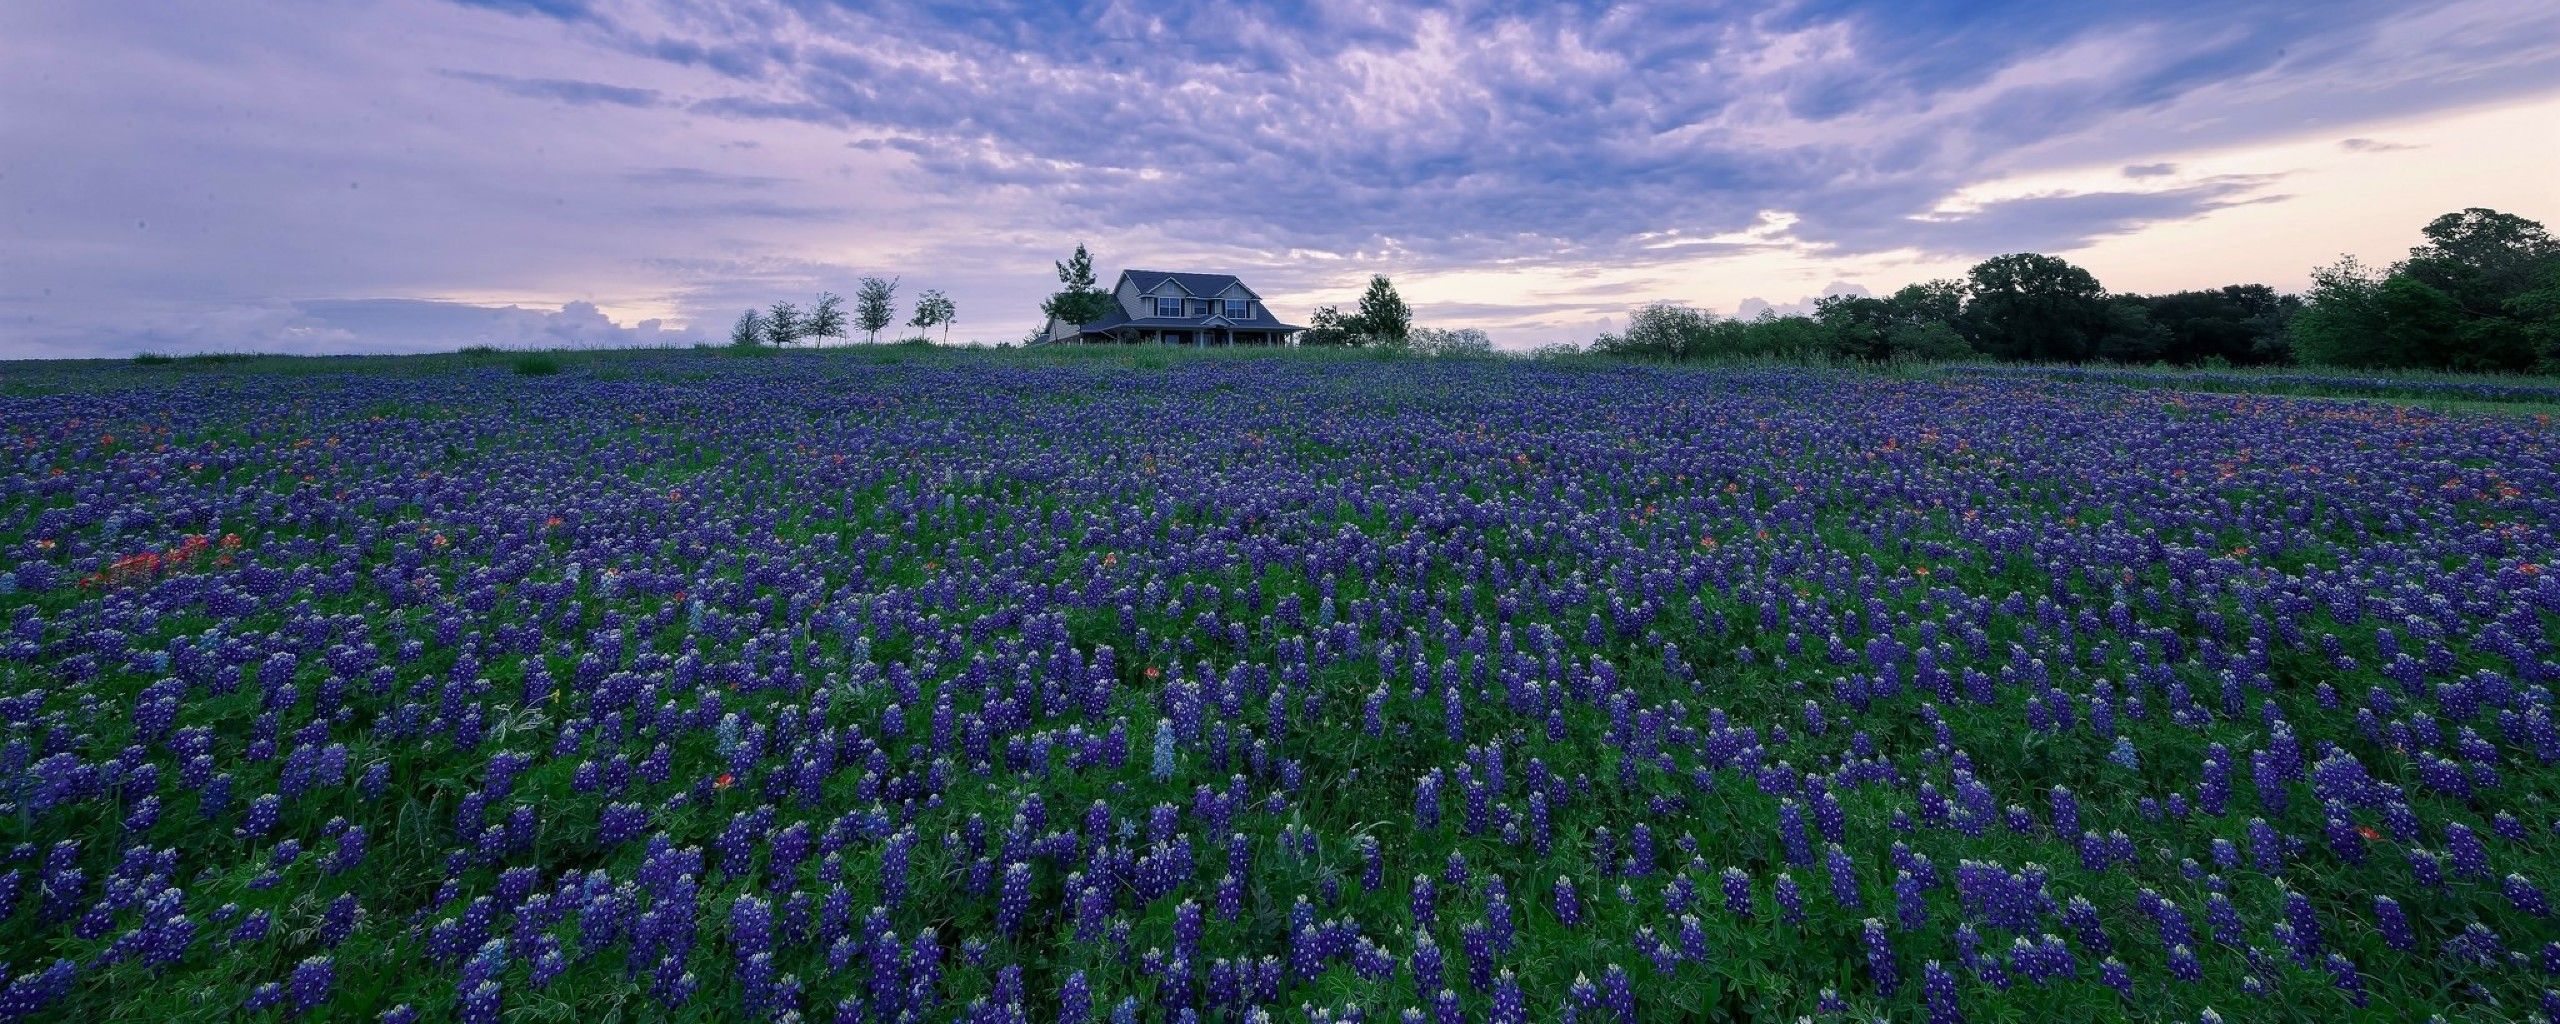 House In Purple Flower Hyacinth Field 2560x1024